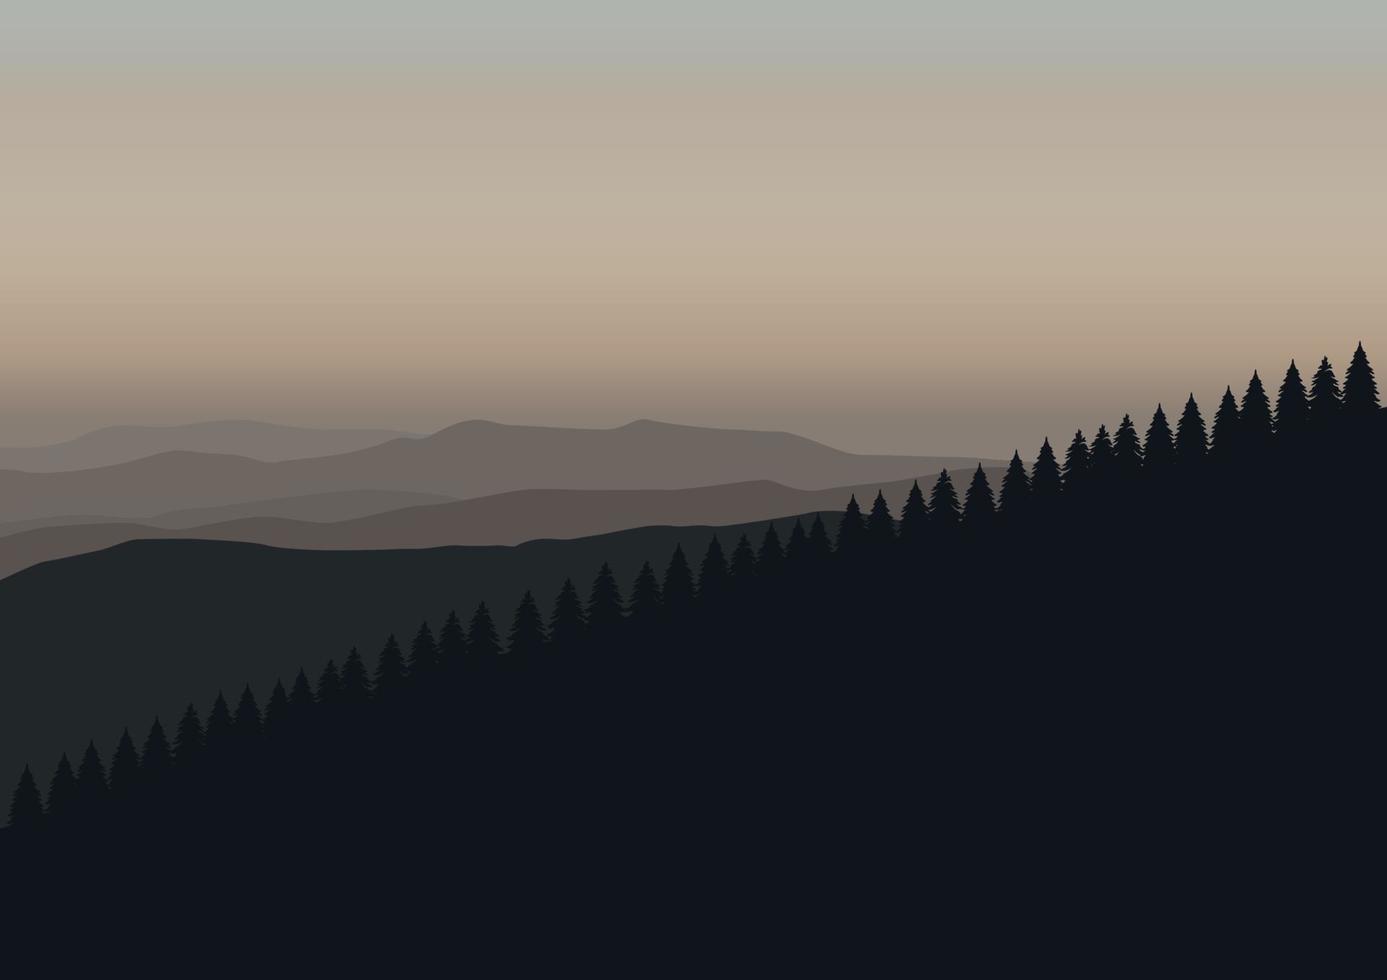 pine forest landscape vector illustration.